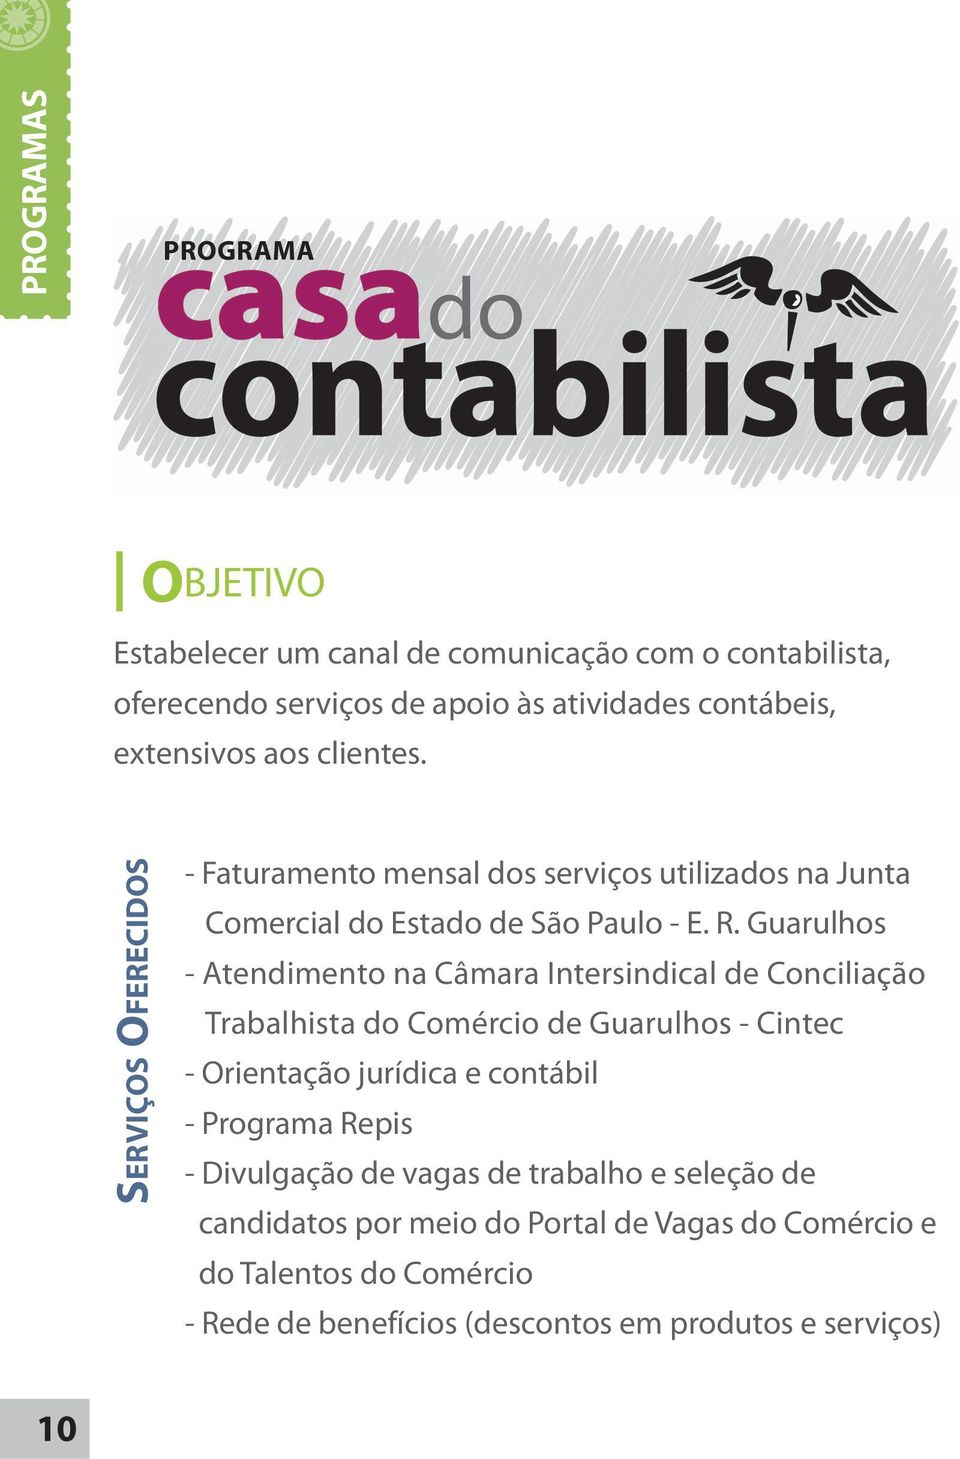 Guarulhos - Atendimento na Câmara Intersindical de Conciliação Trabalhista do Comércio de Guarulhos - Cintec - Orientação jurídica e contábil - Programa